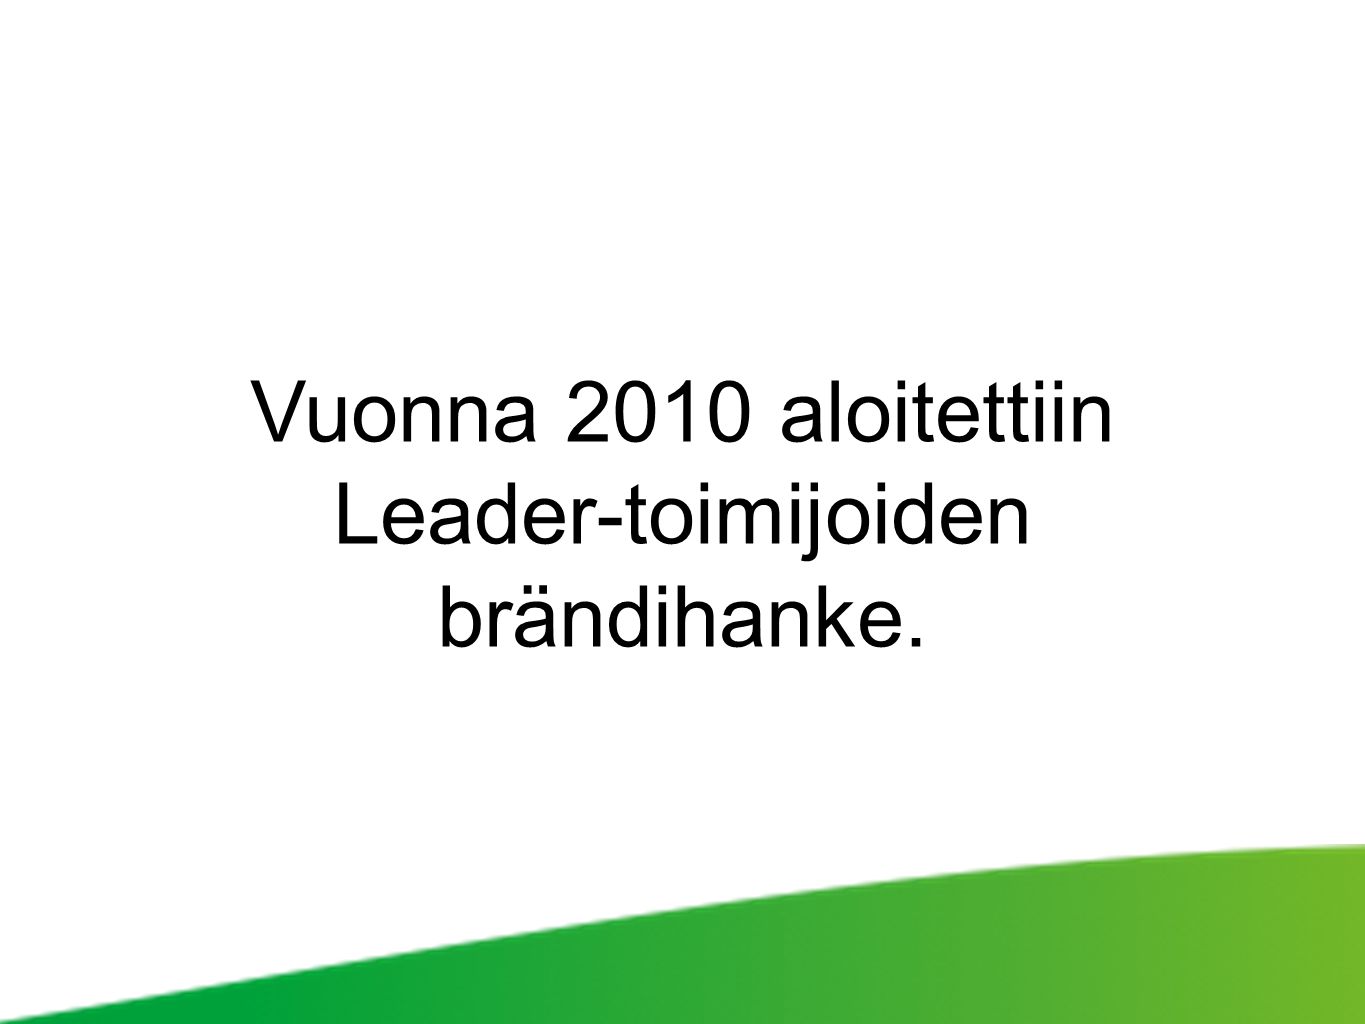 Vuonna 2010 aloitettiin Leader-toimijoiden brändihanke.